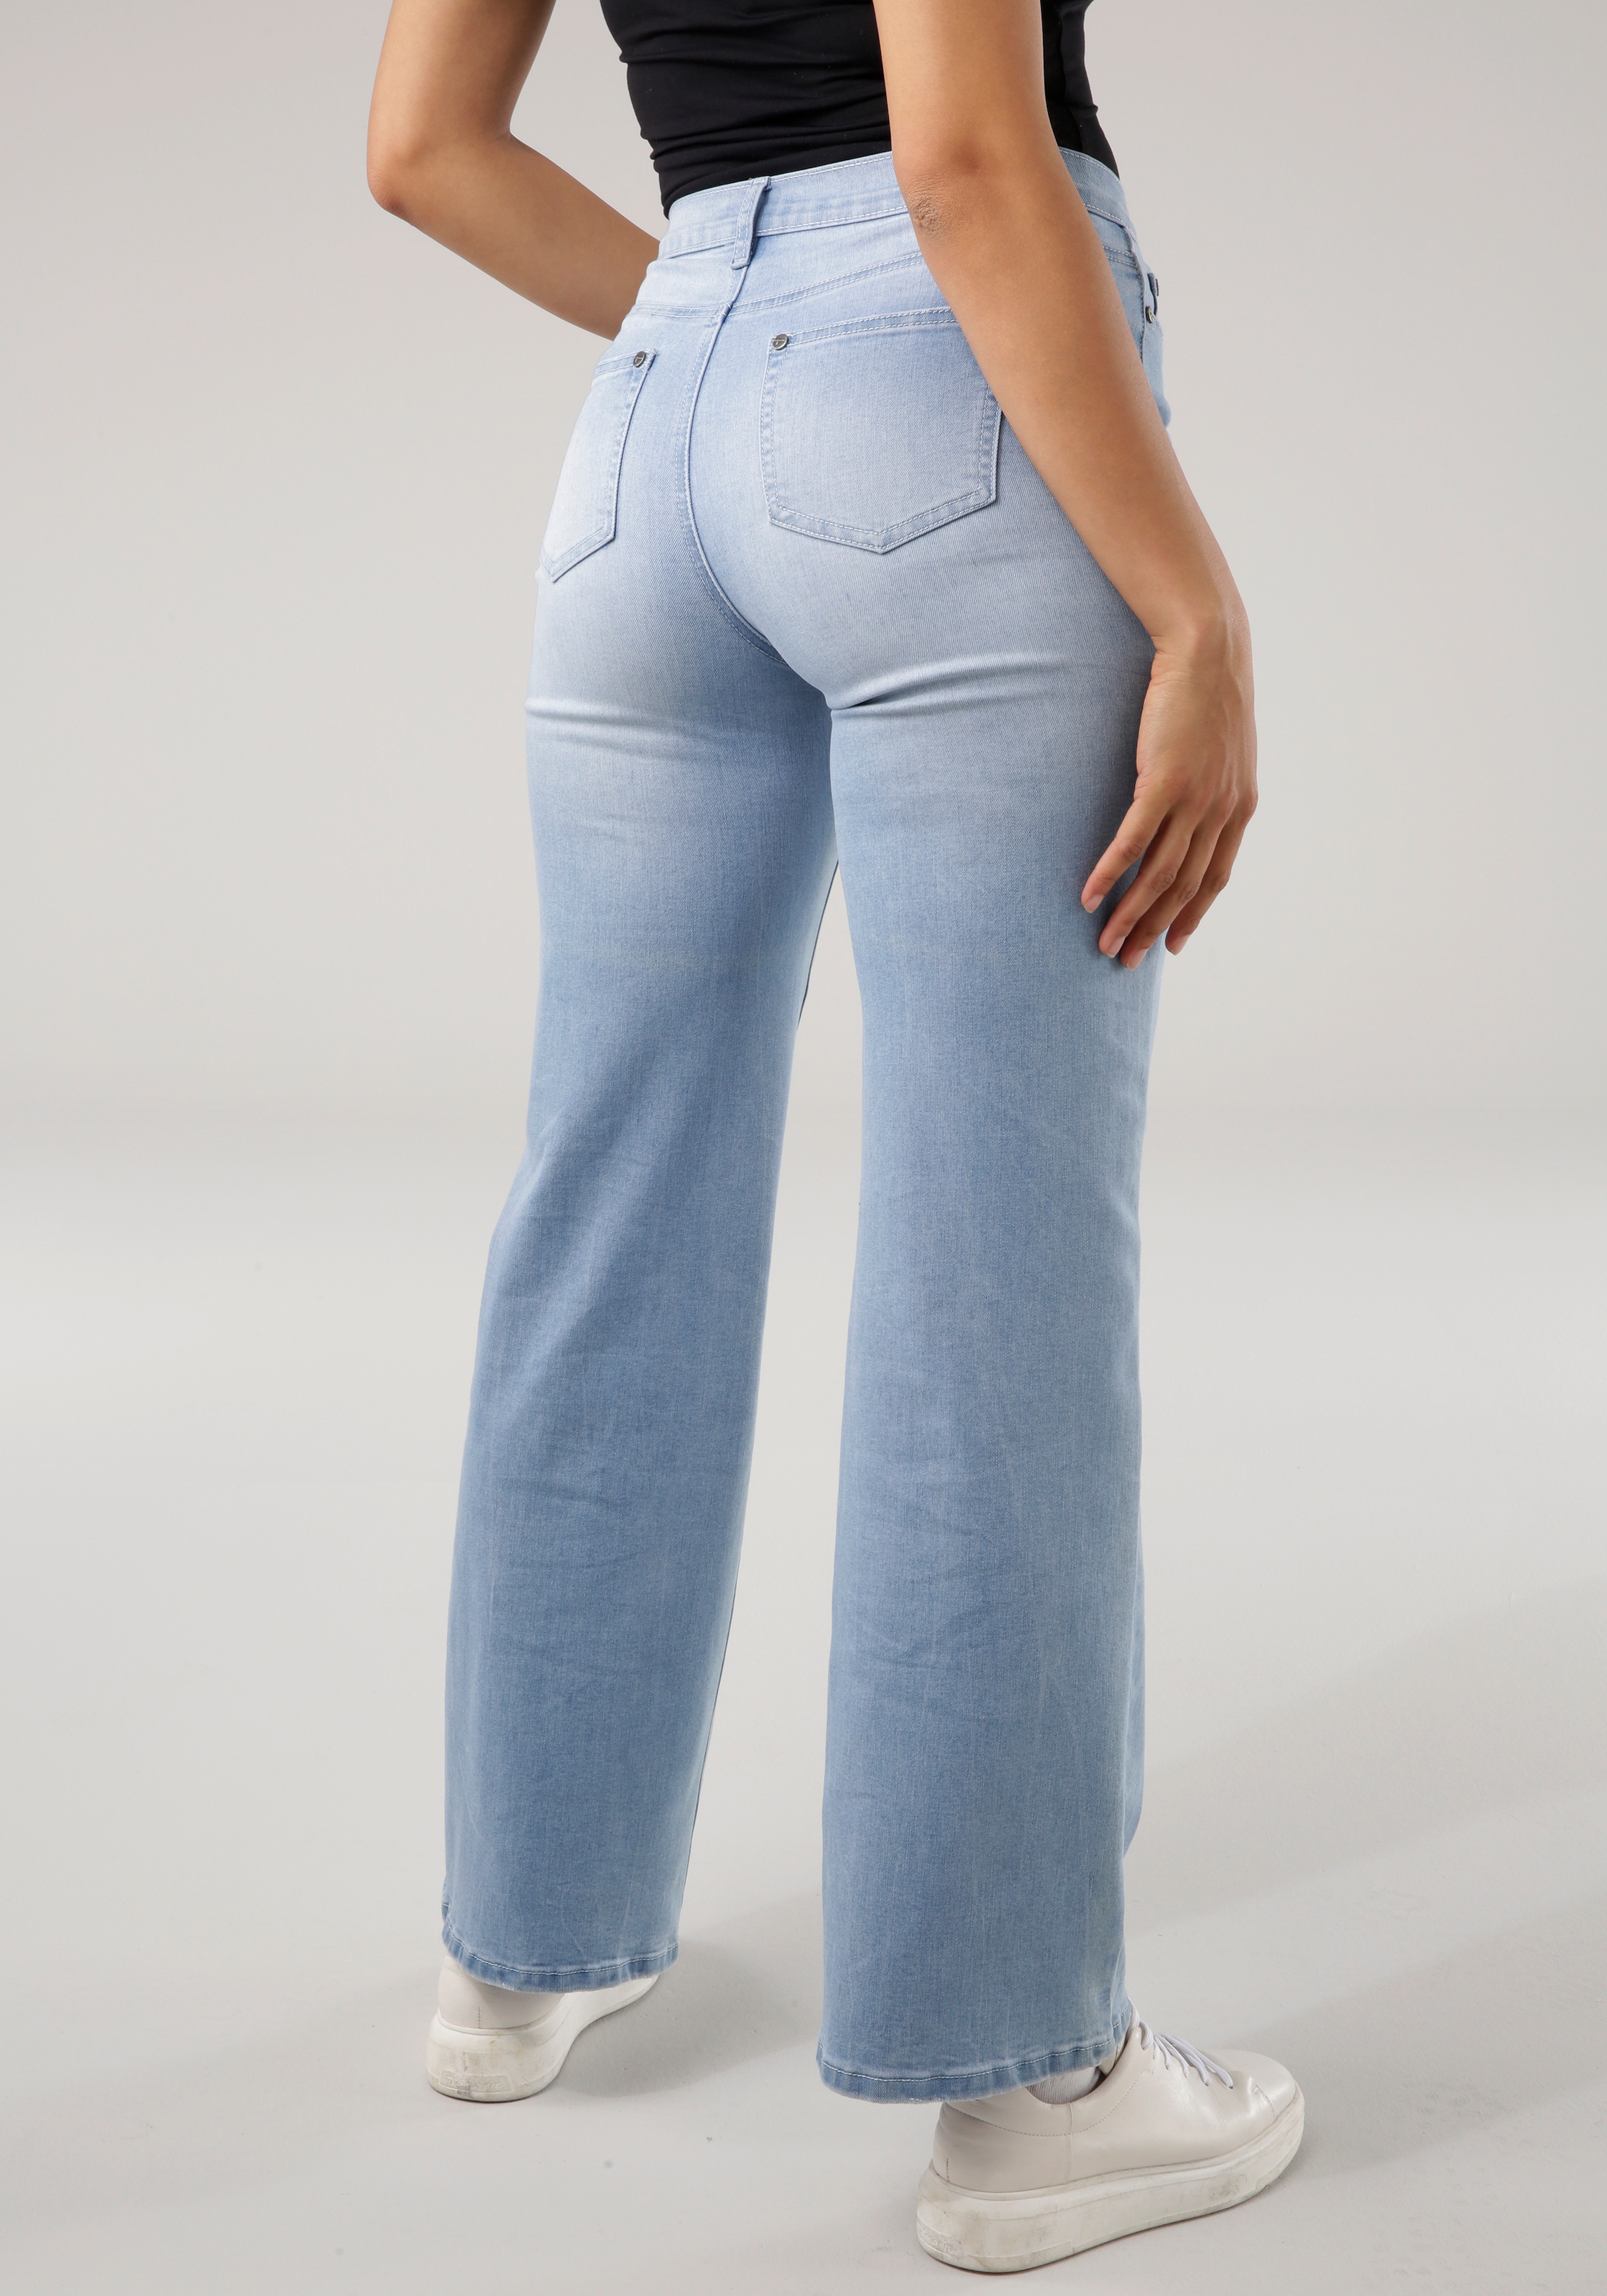 Weite 5-pocket-Style bei Jeans, Tamaris ♕ im